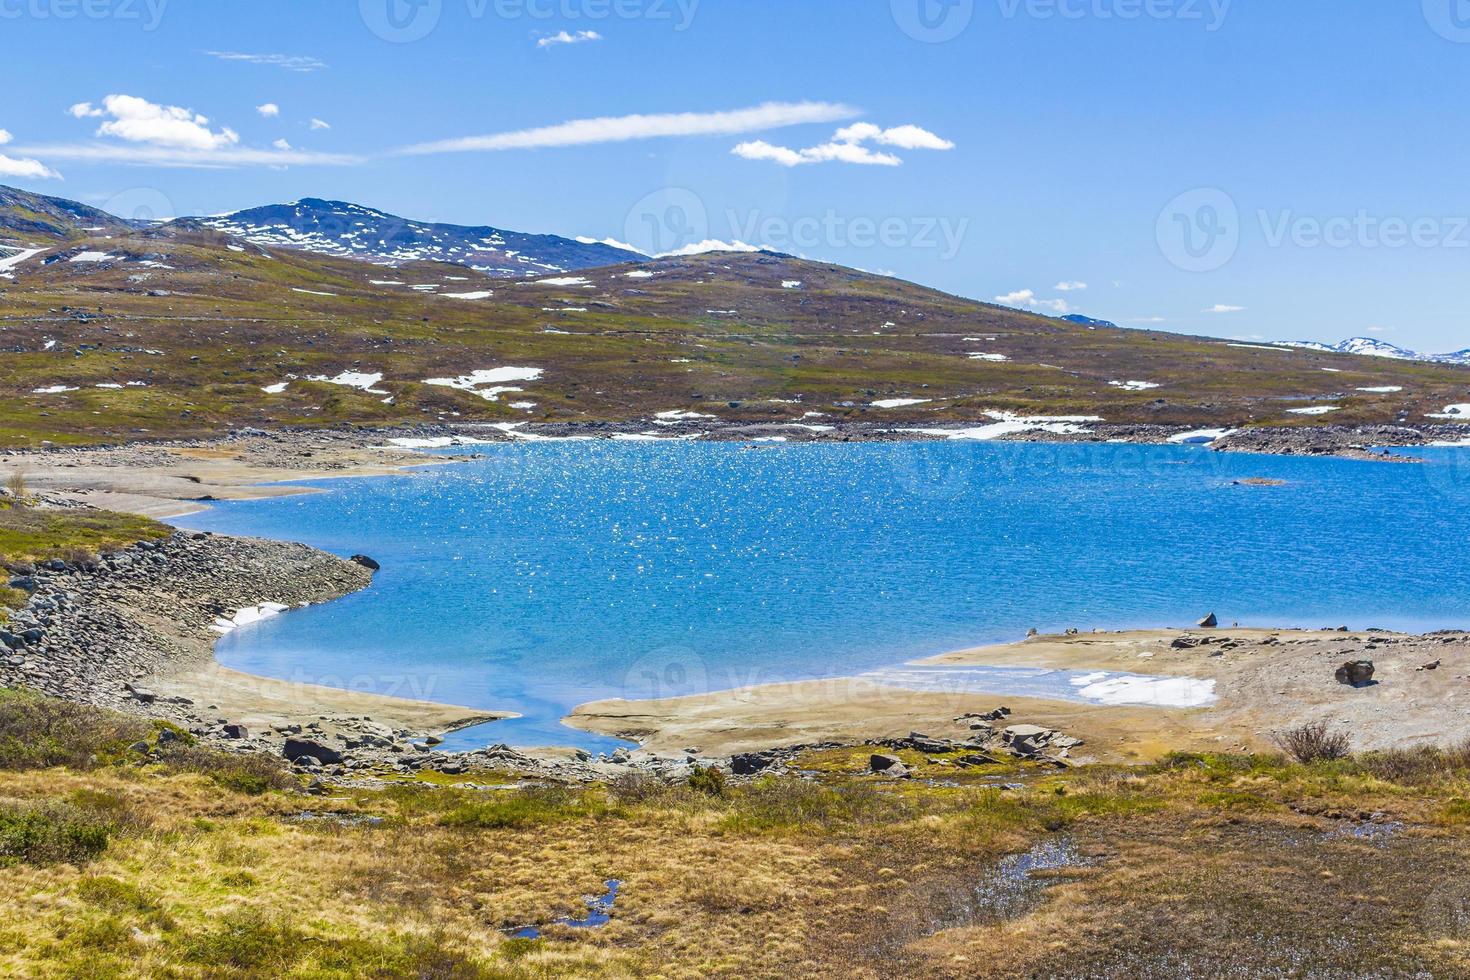 vavatn lago panorama paesaggio massi montagne hemsedal norvegia. foto